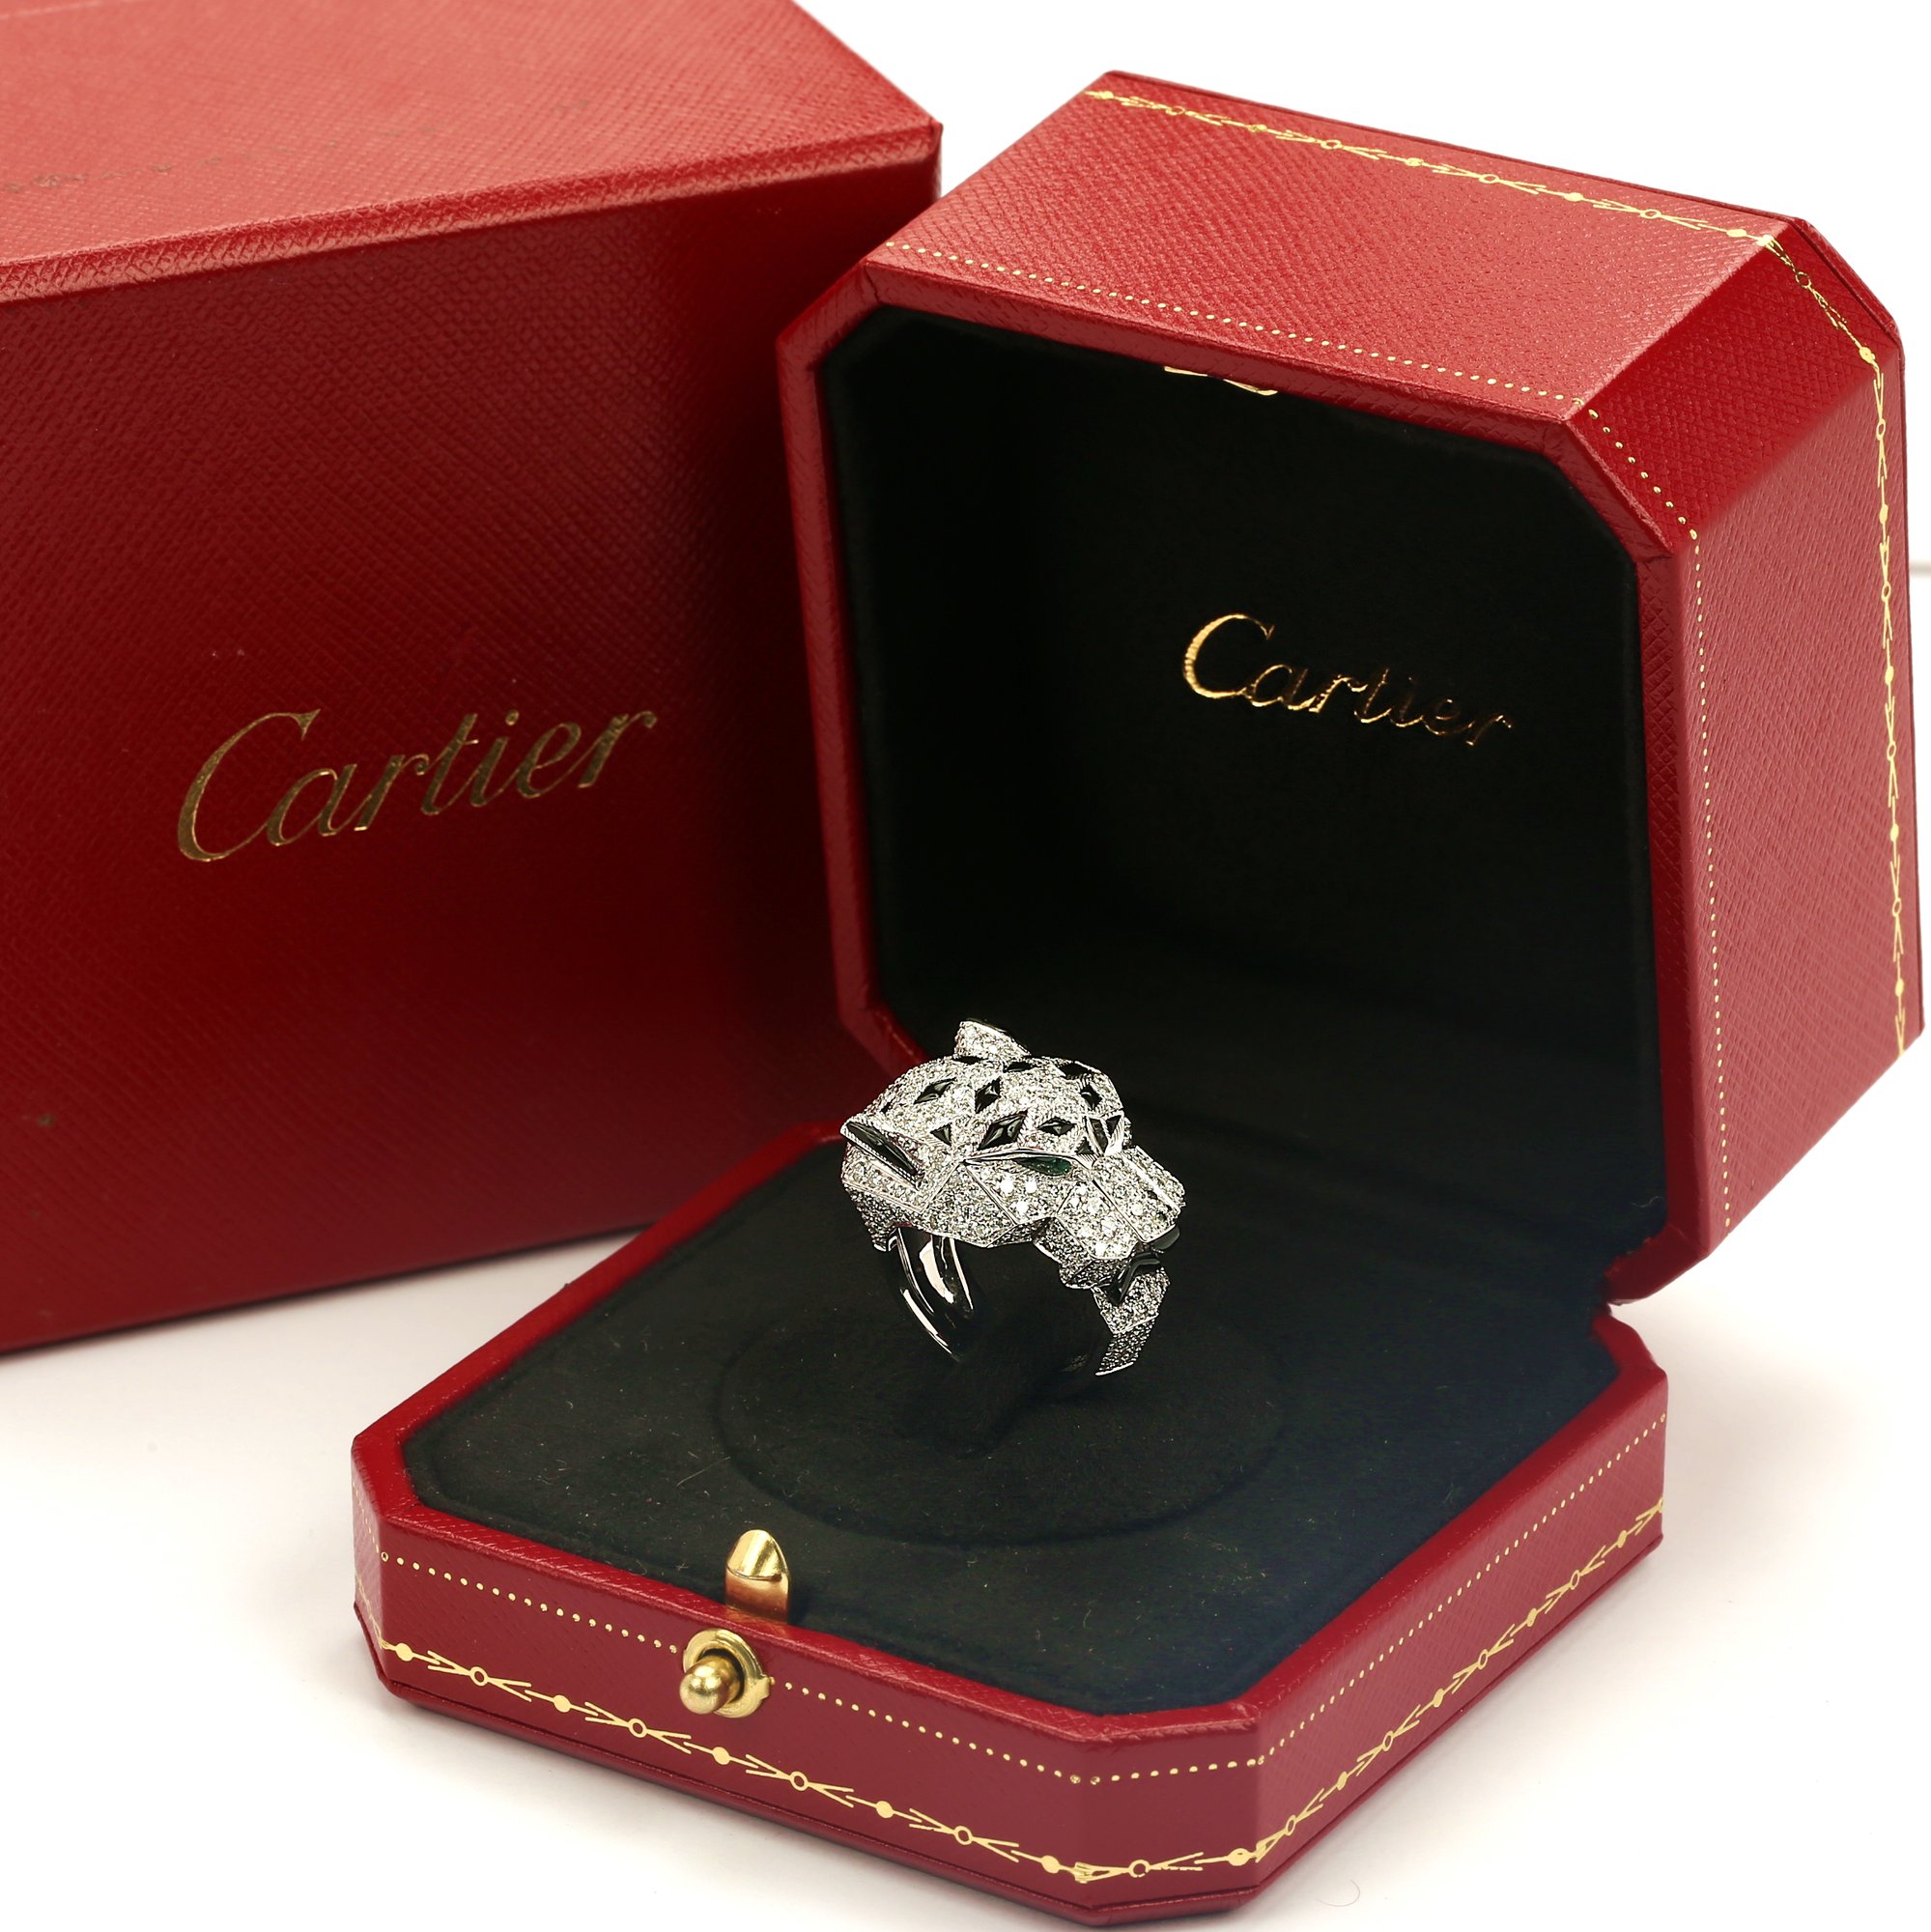 18k oro blanco diamante completa Pave Onyx Esmeralda Panthere de Cartier anillo N4211000